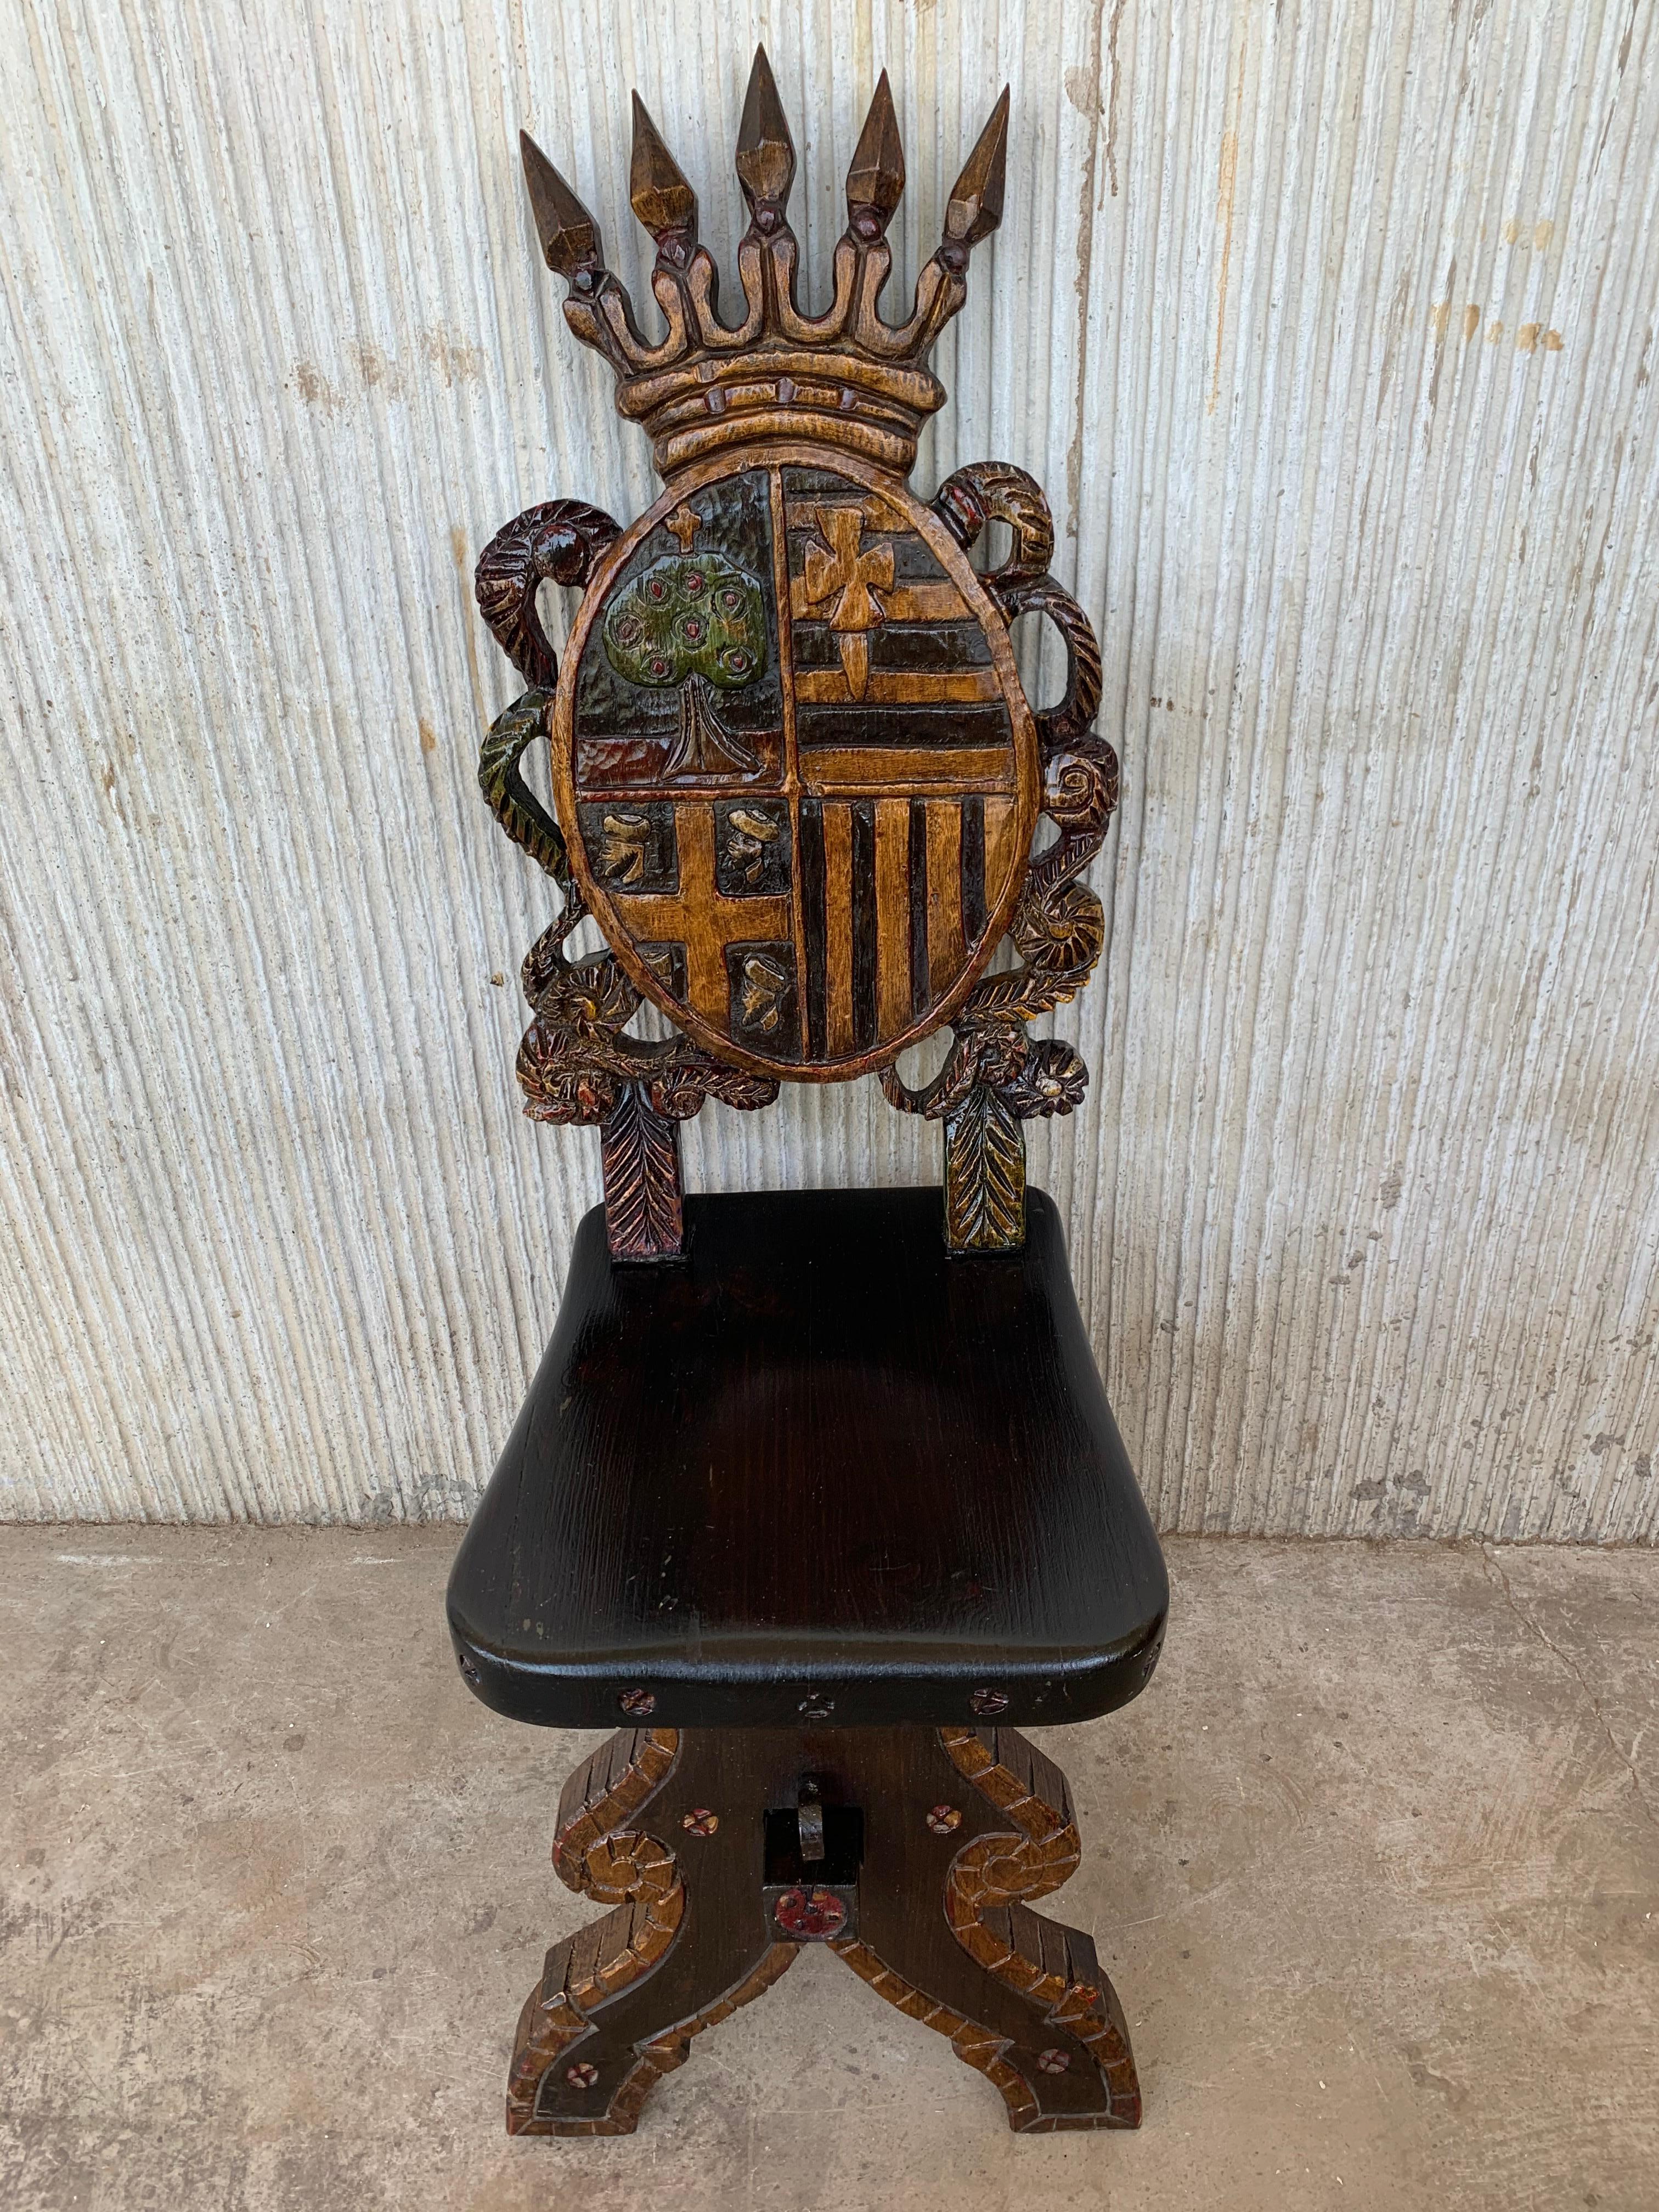 Chaise ou tabouret espagnol sculpté en Sgabello représentant des boucliers d'Espagne. 
Polychrome original 
Il possède un grand écusson représentant une couronne.
 